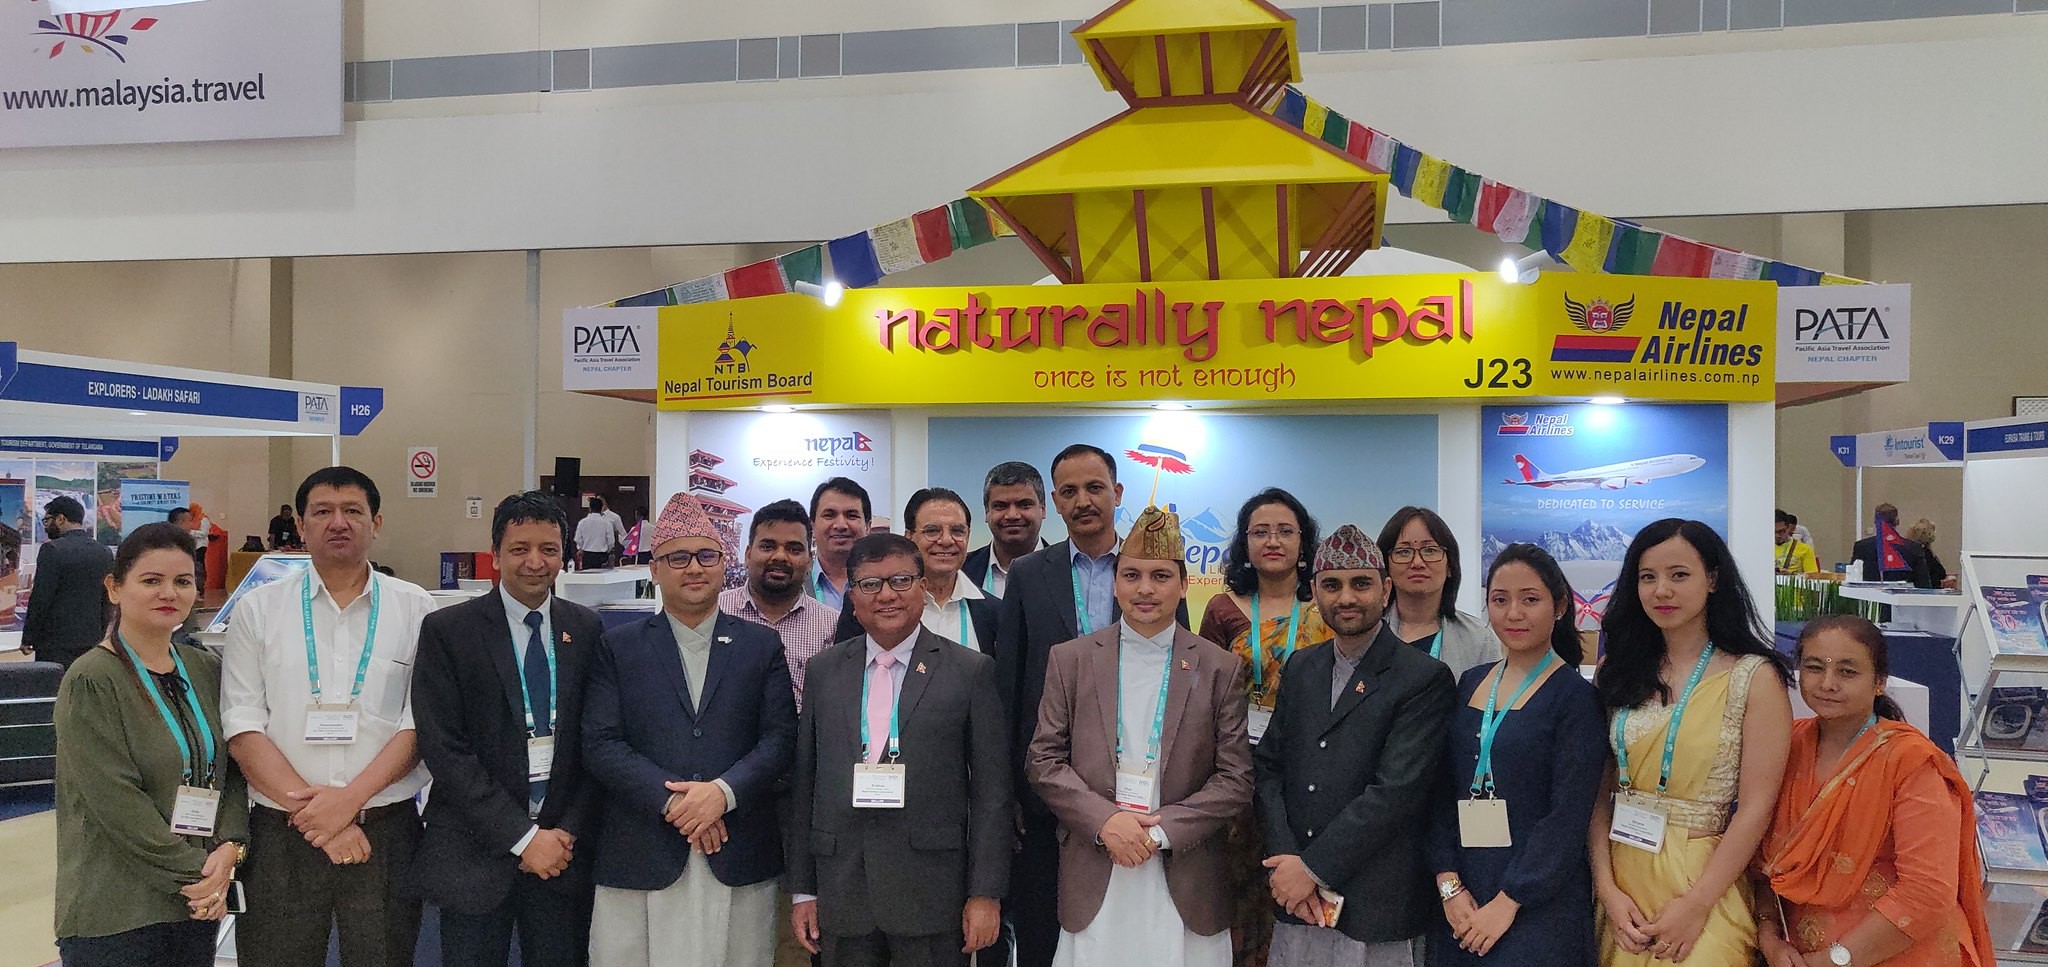 Nepal makes Grand at PATA Travel Mart 2018, Langkawi, Malaysia